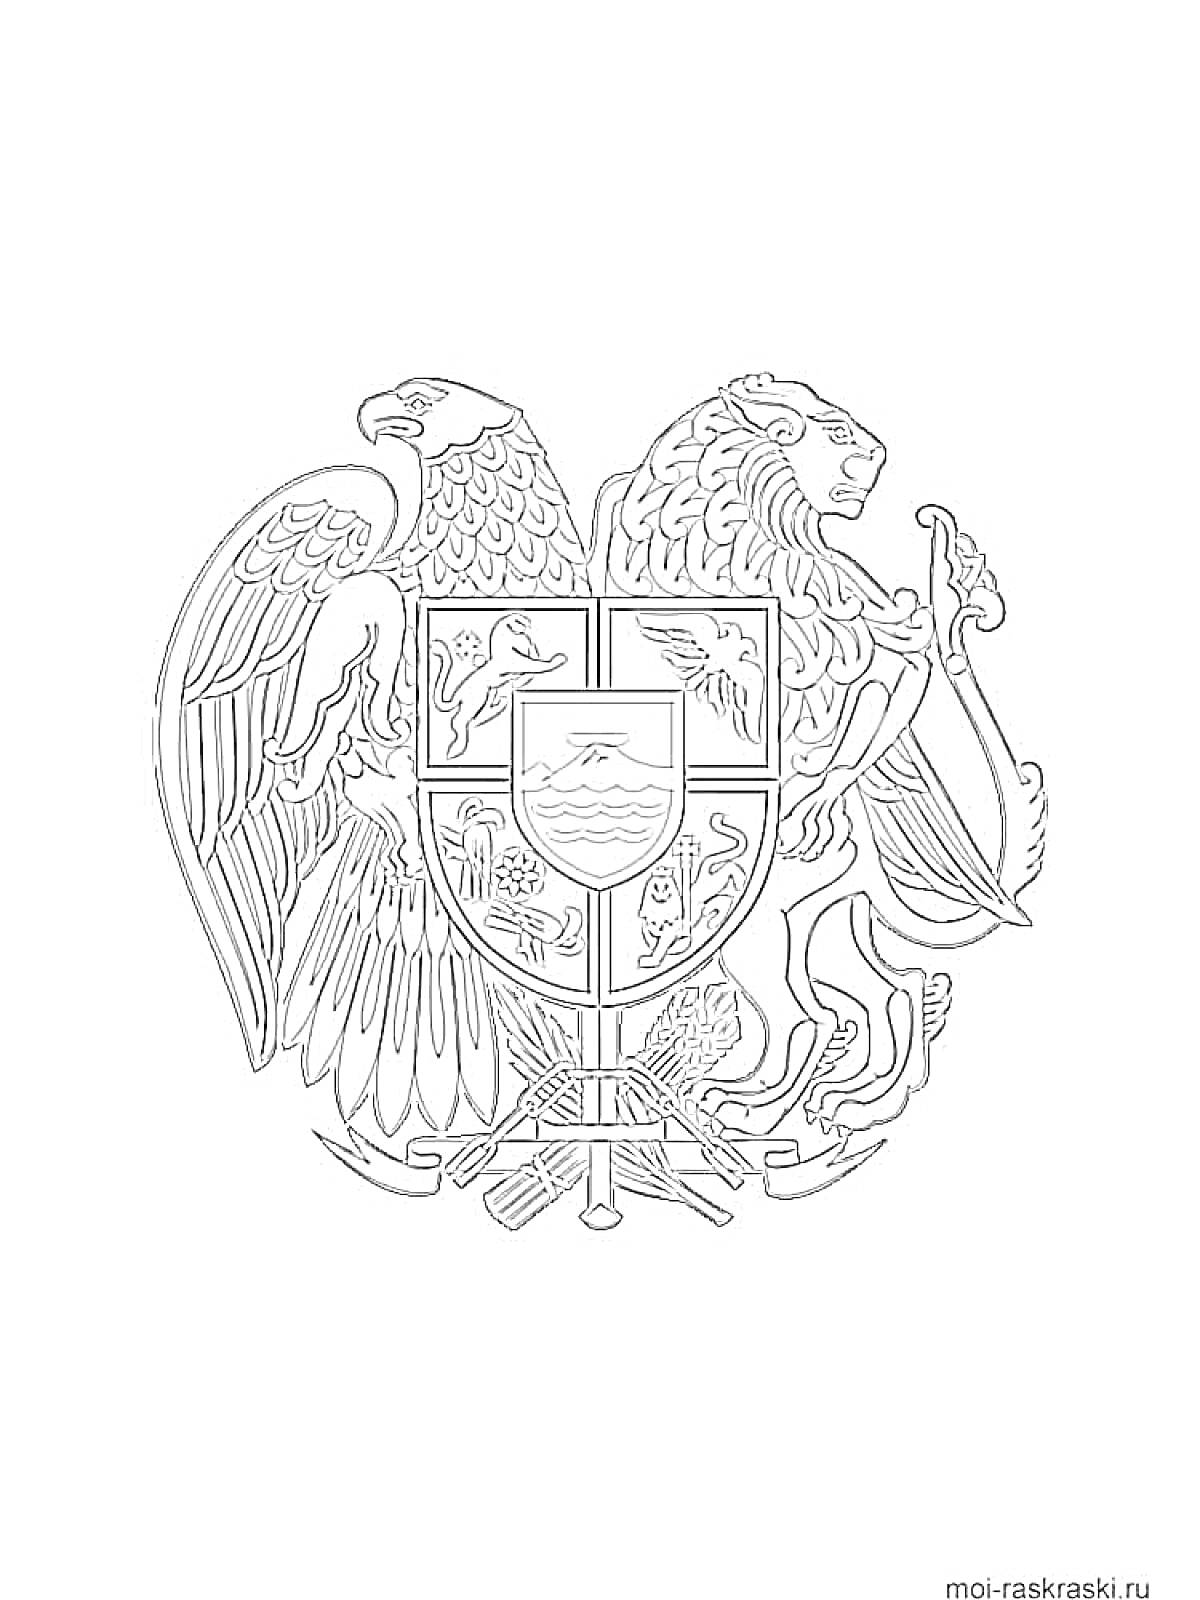 Раскраска Герб с орлом и львом, держащими щит с пятью символами внутри: горами, крестом, львом, крестом и водоемами, сабли внизу